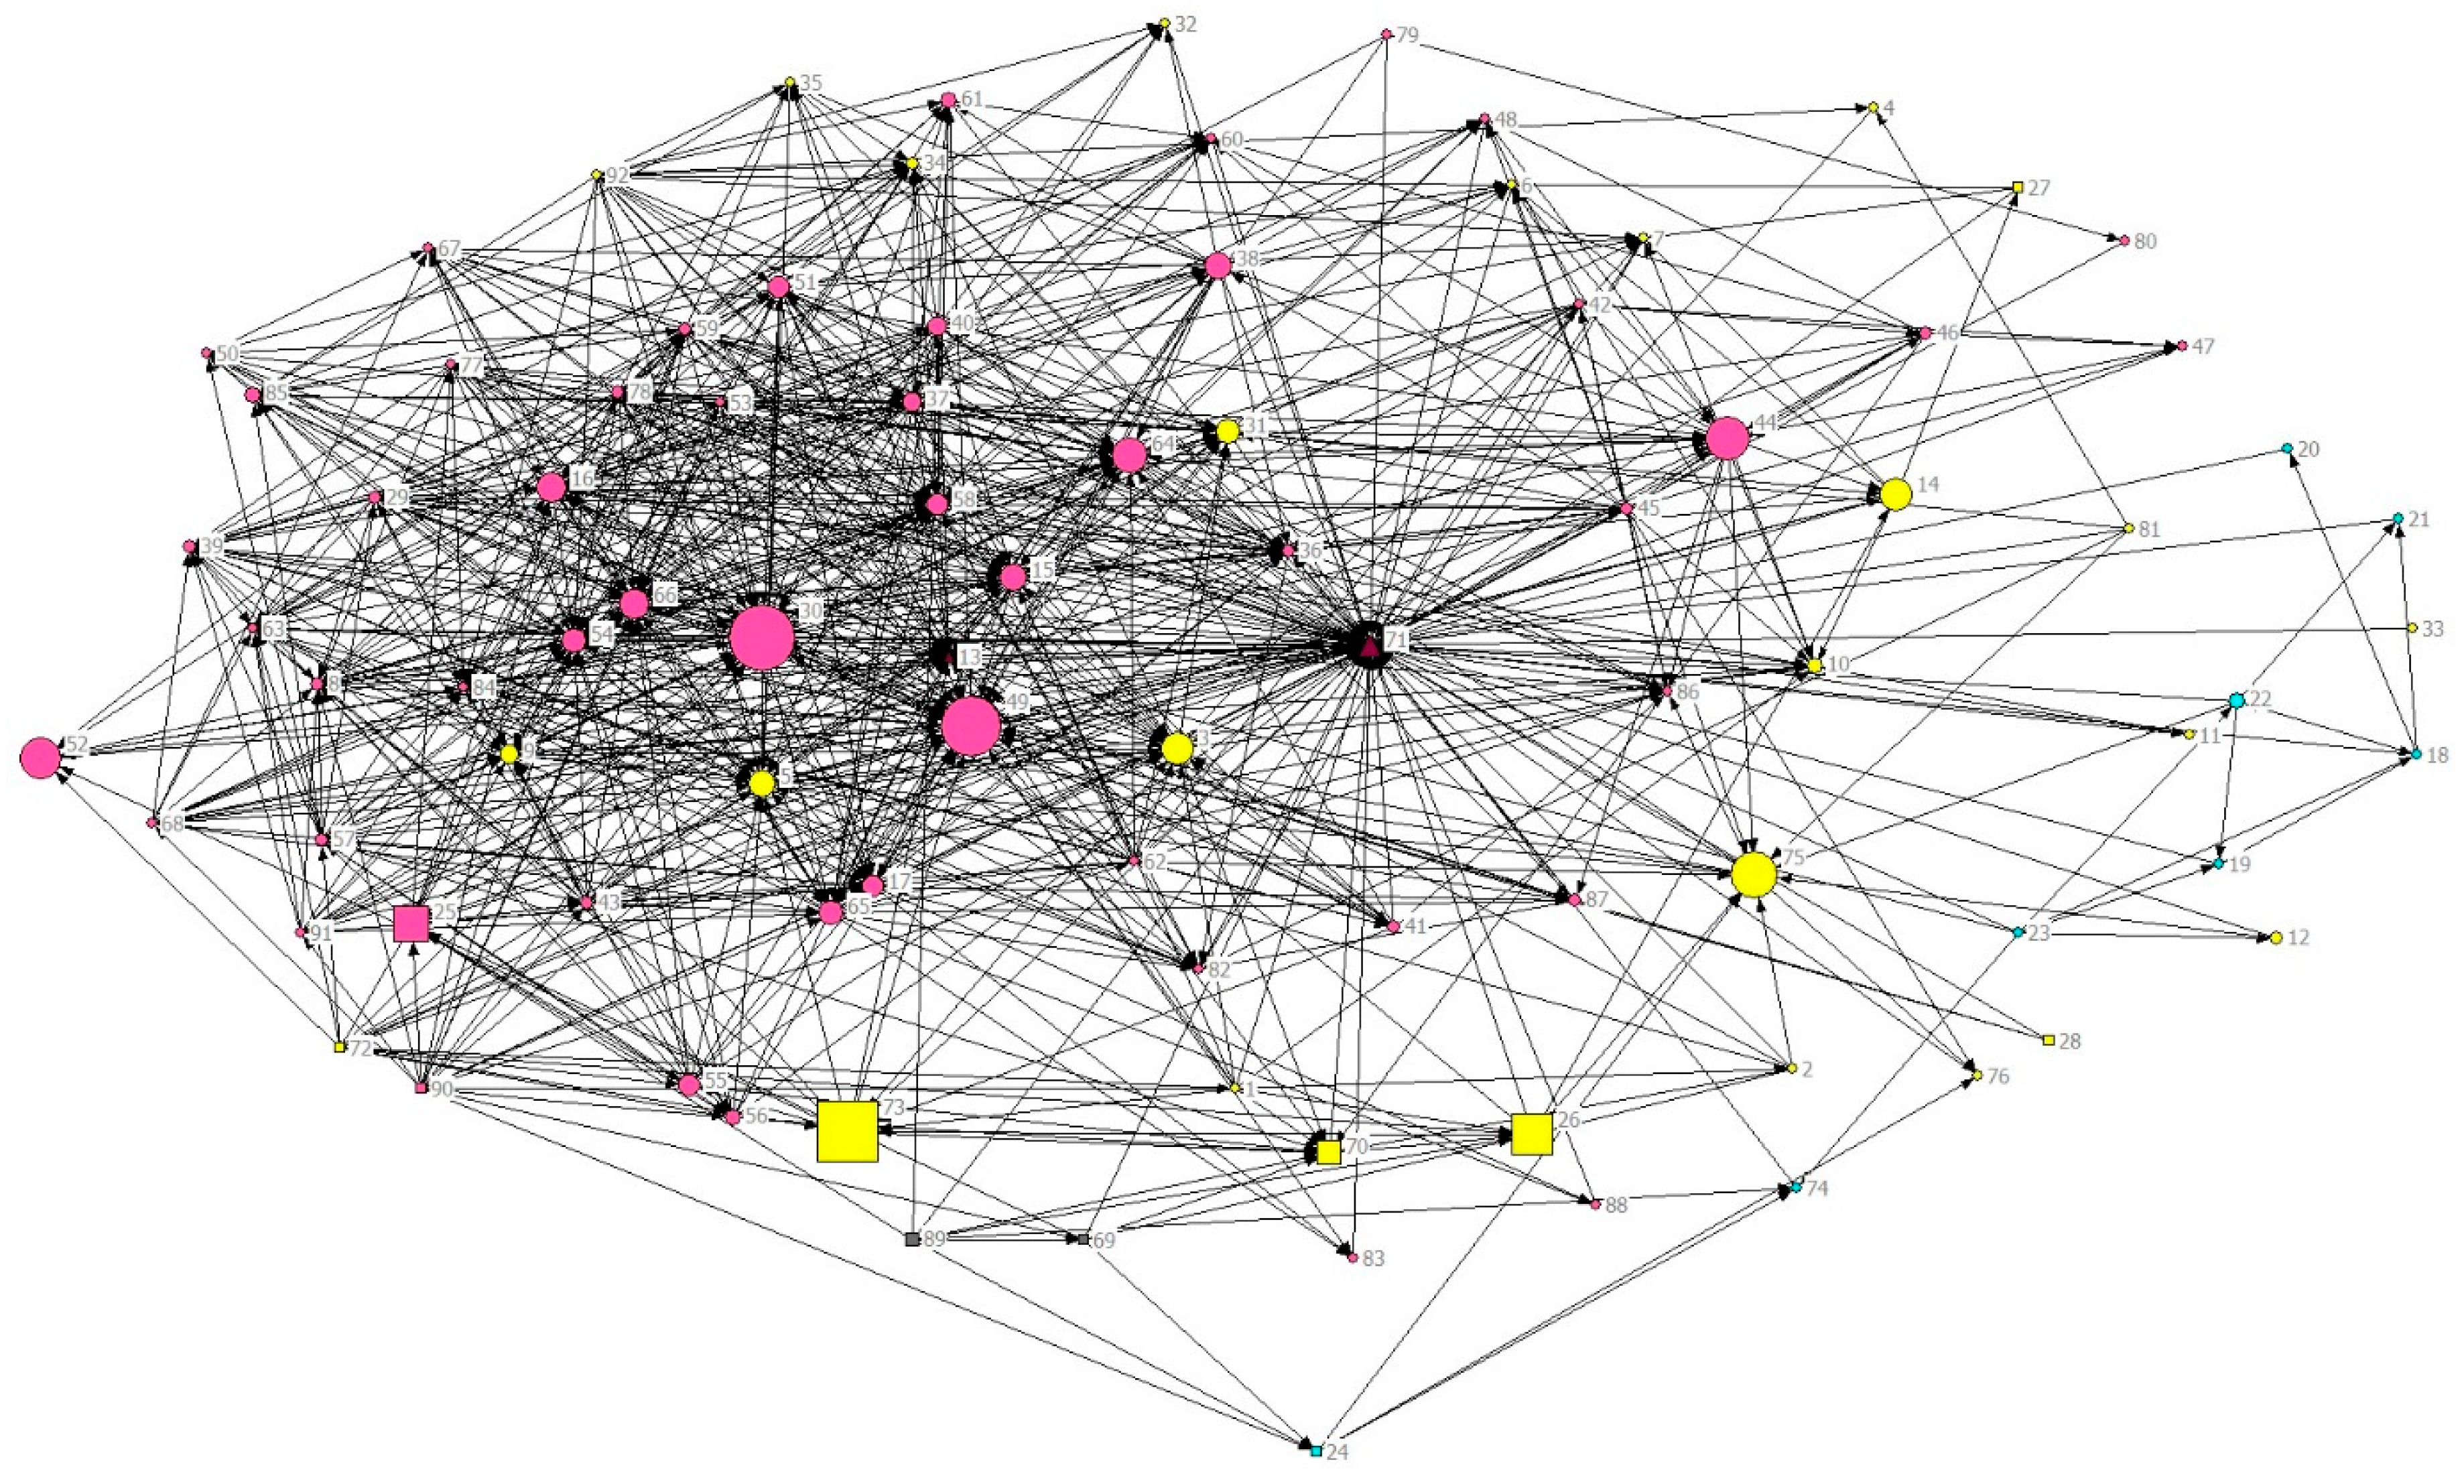 Connections answer. Визуализация нейронной сети. Визуализация семантических связей. Семантическая паутина. Семантическая сеть.